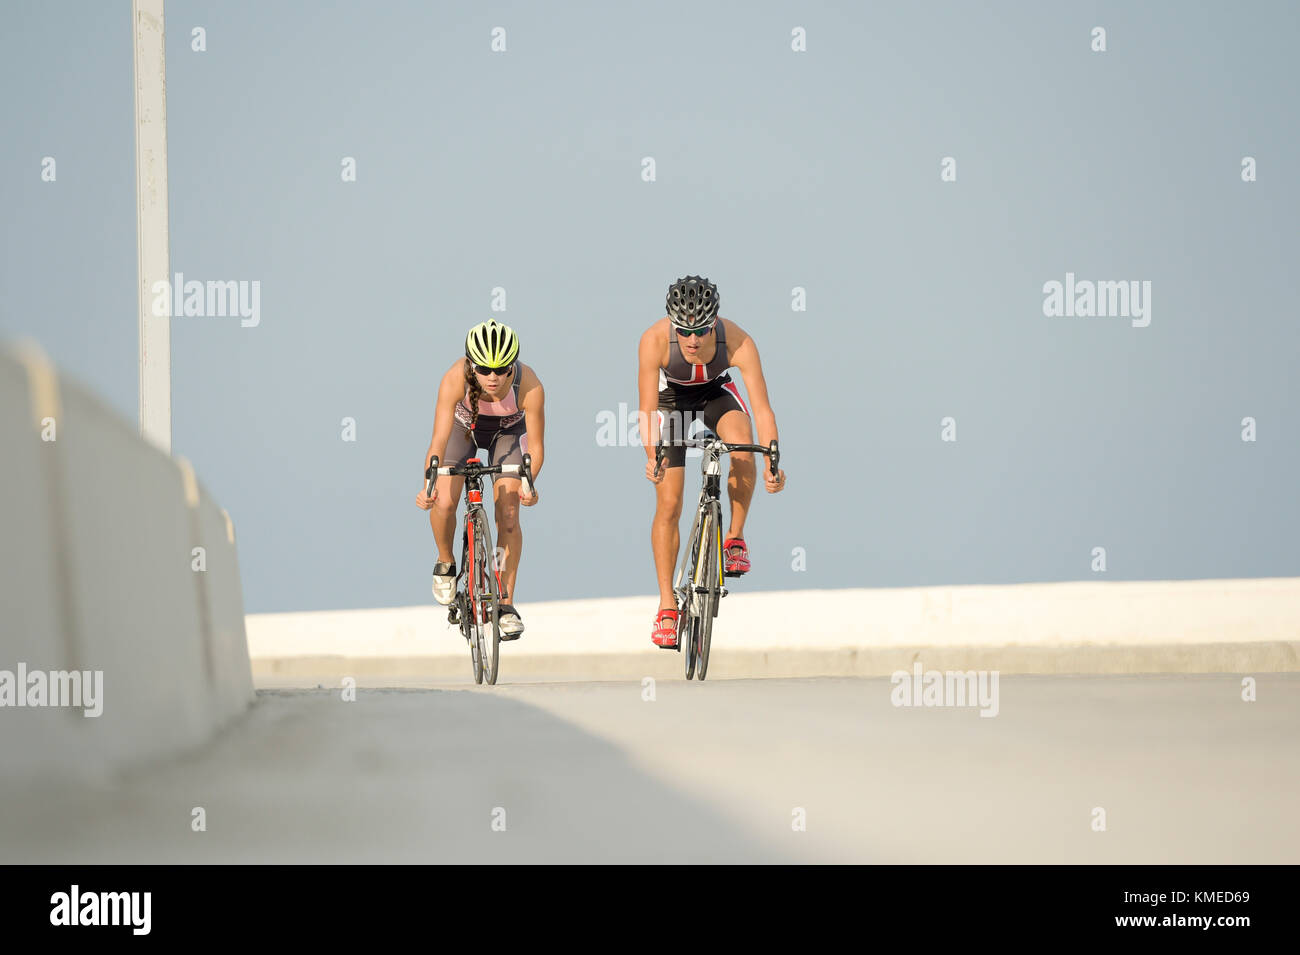 Deux cyclistes la bicyclette contre le ciel clair au cours de triathlon,Veracruz,Mexique Banque D'Images